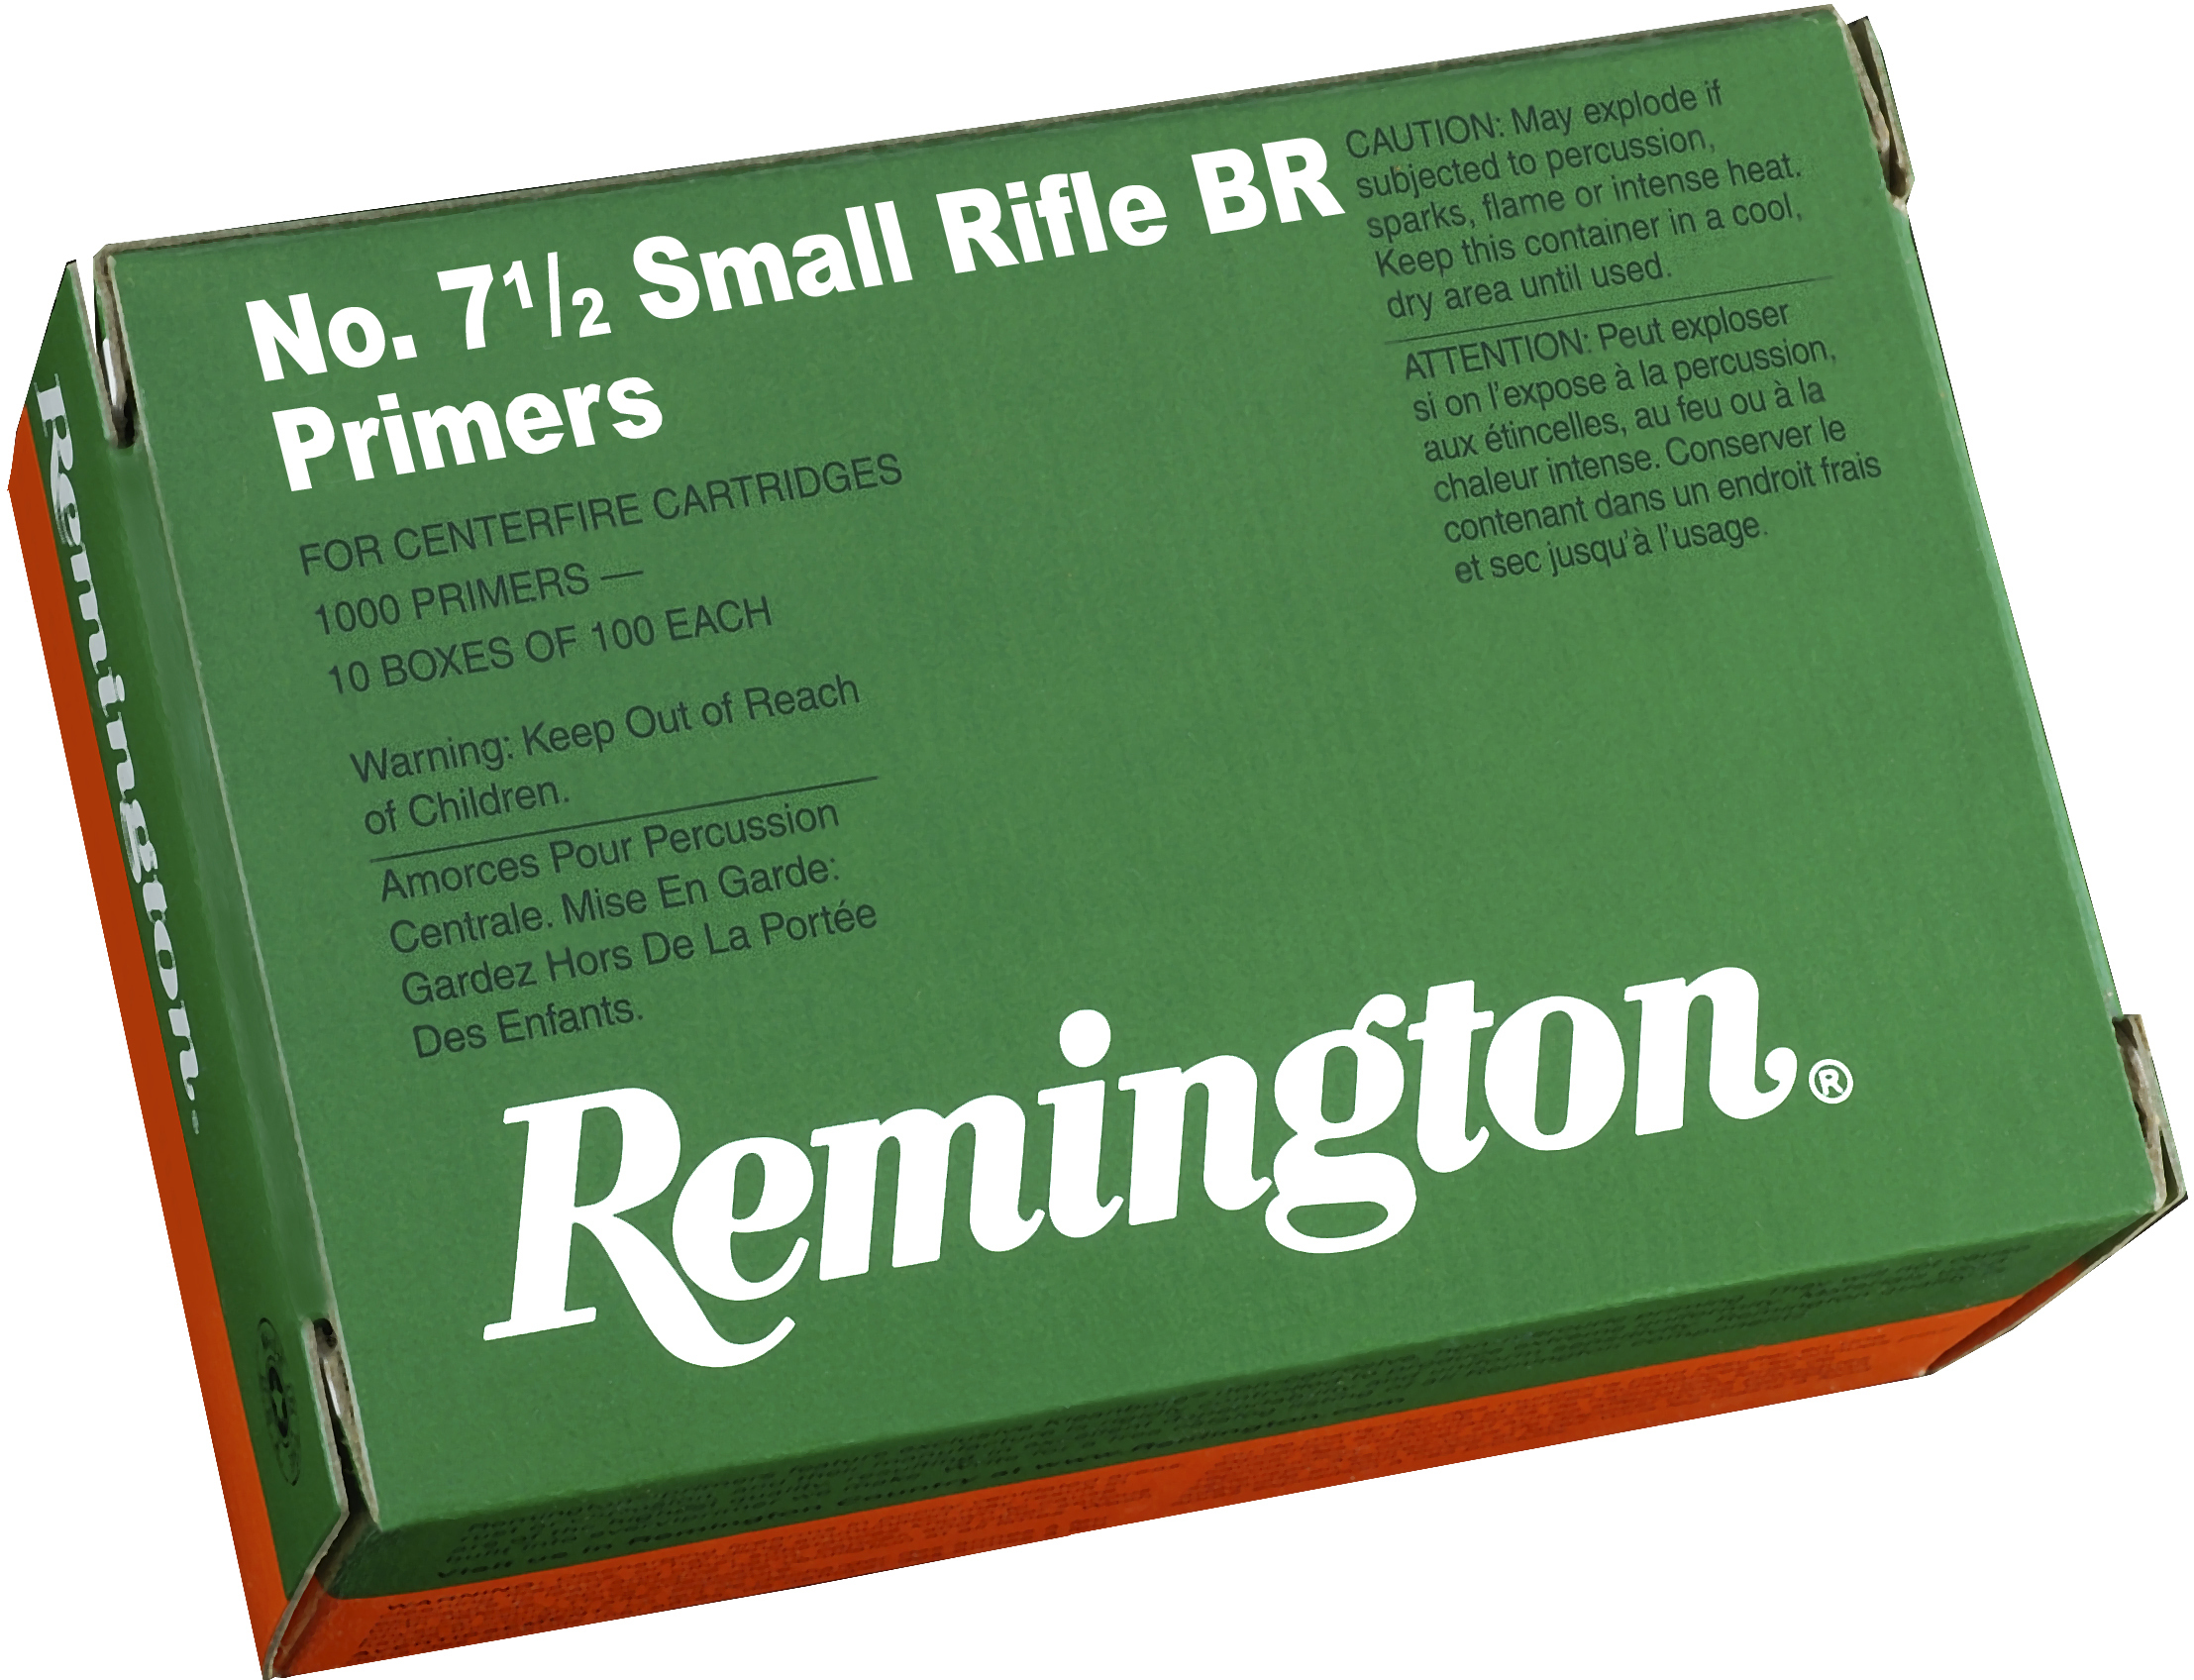 Remington X22628 Centerfire Primers 7-1/2 Sm Rifle Br Primers